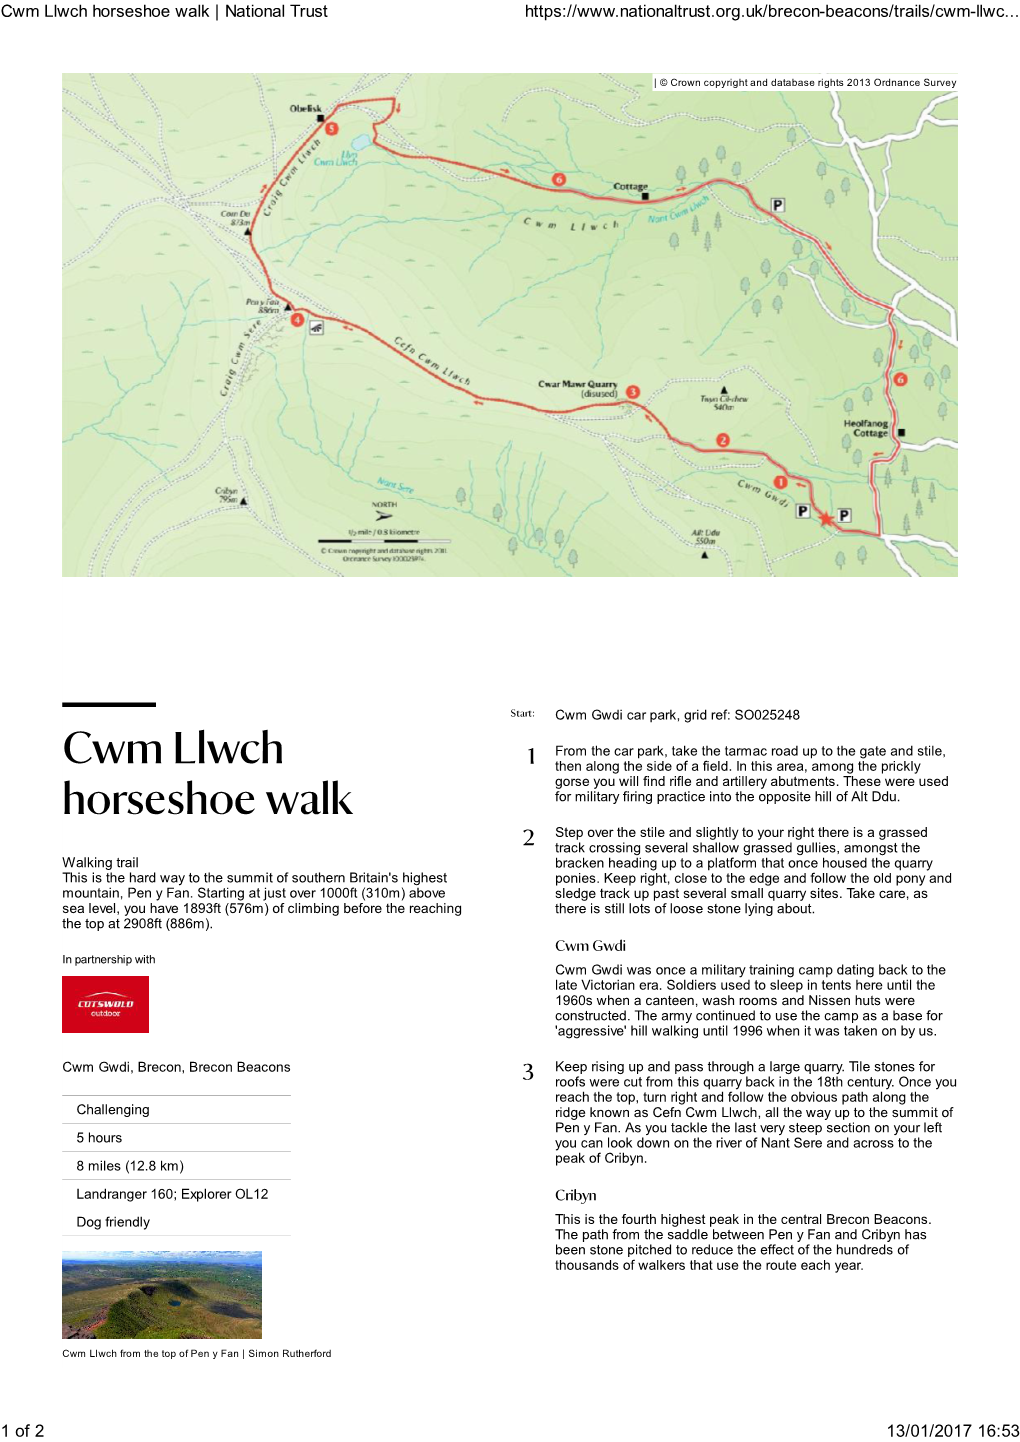 Cwm Llwch Horseshoe Walk | National Trust